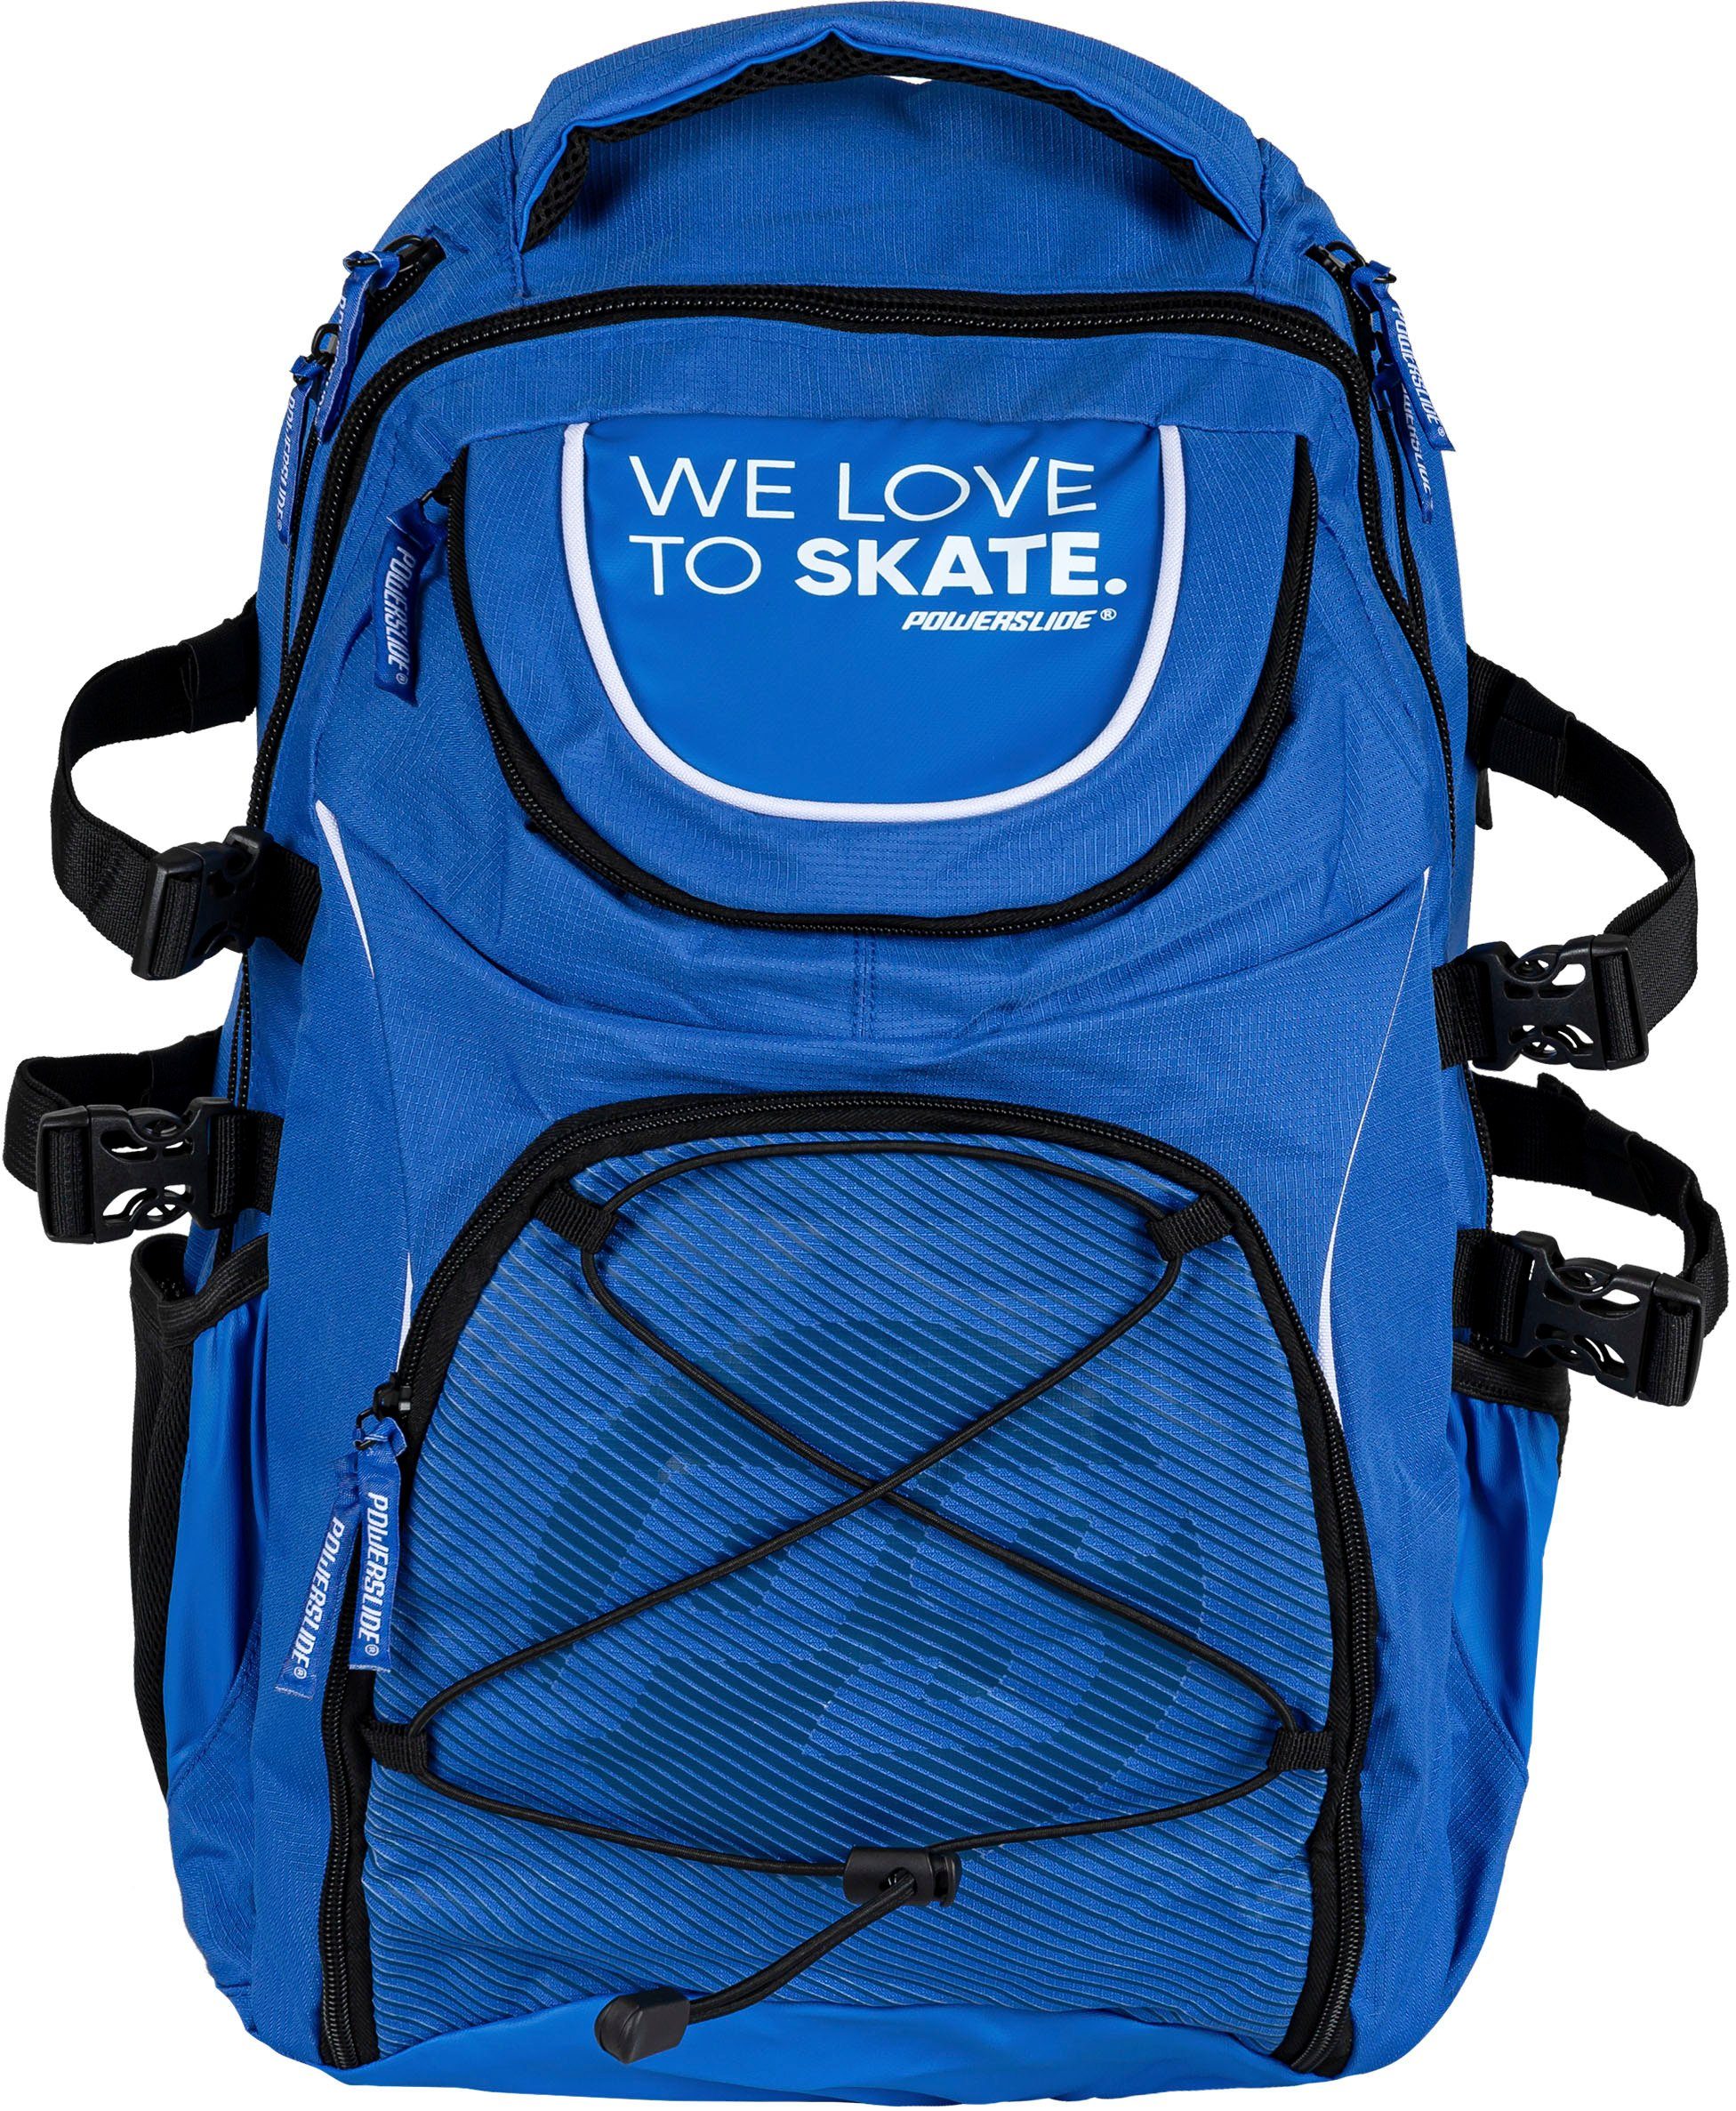 WeLoveToSkate Backpack Sportrucksack Powerslide